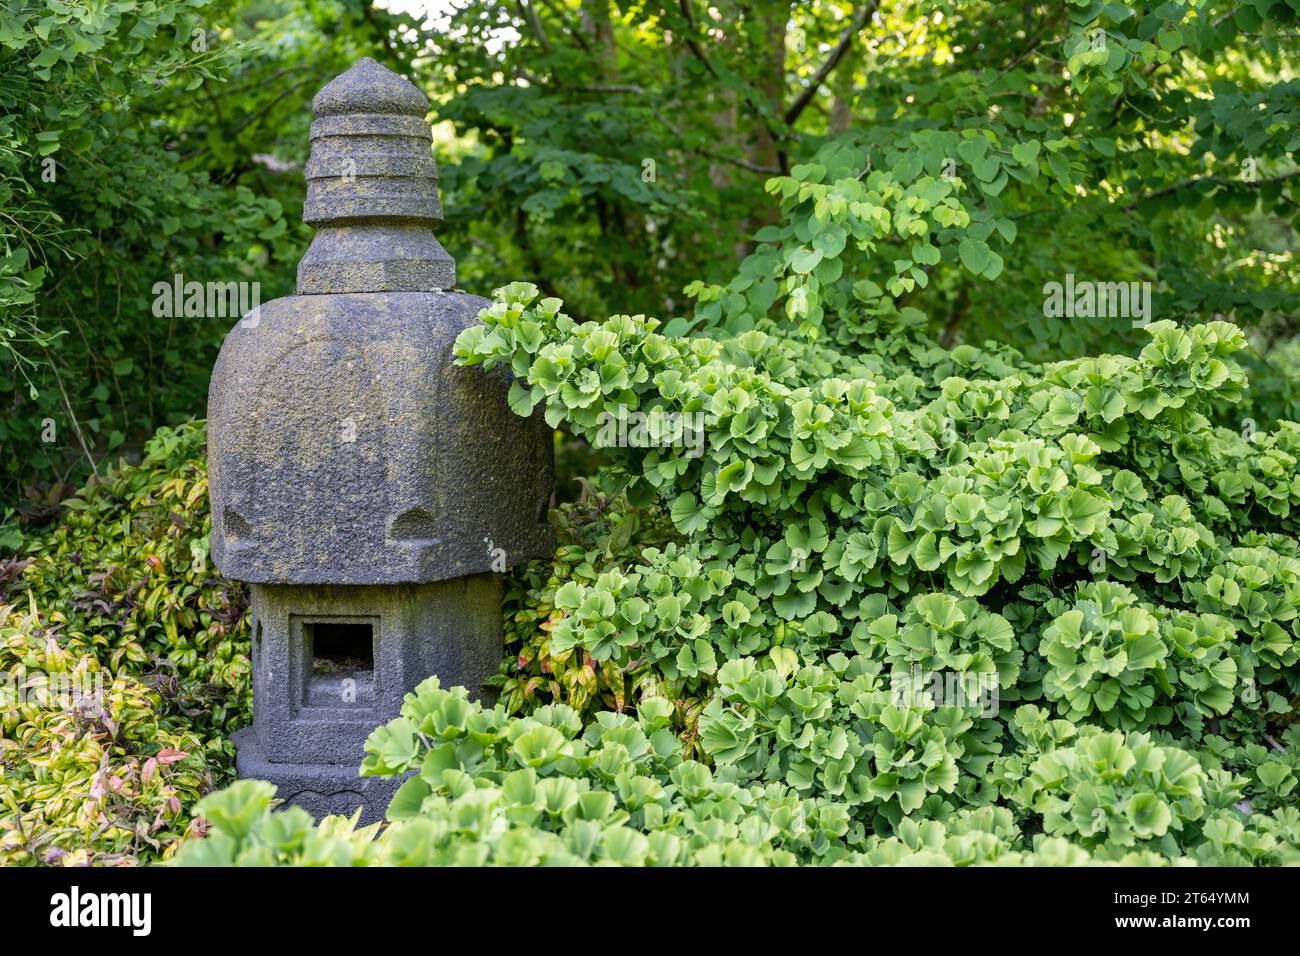 Japanese shrine, Minka house, Royal Botanic Gardens (Kew Gardens), UNESCO World Heritage Site, Kew, Greater London, England, United Kingdom Stock Photo